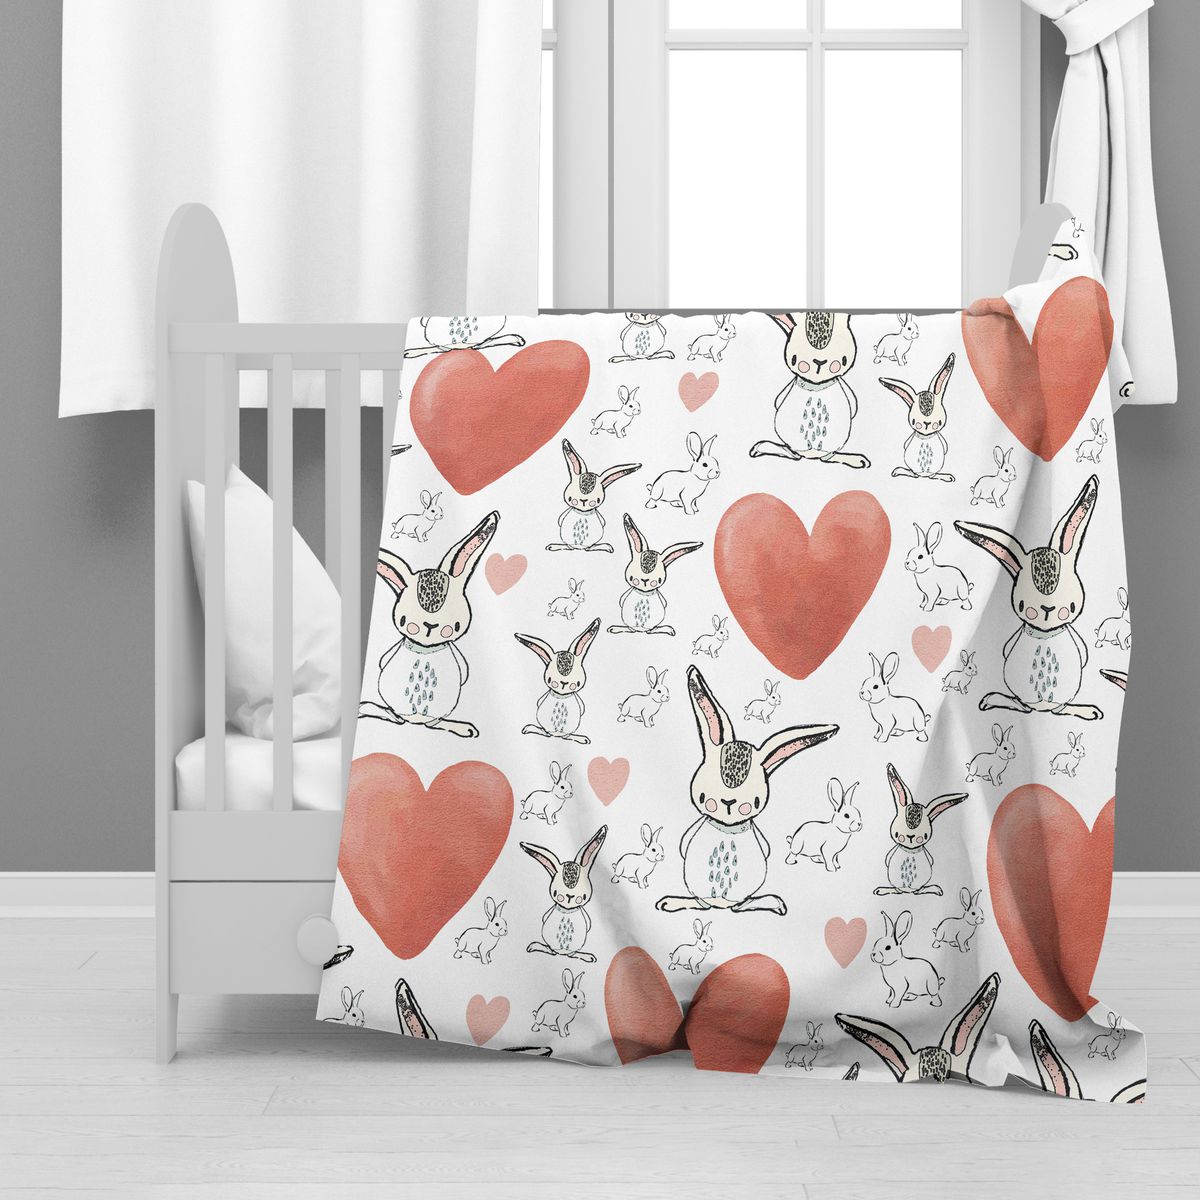 Big Heart Rabbits Minky Blanket By Mark van Vuuren